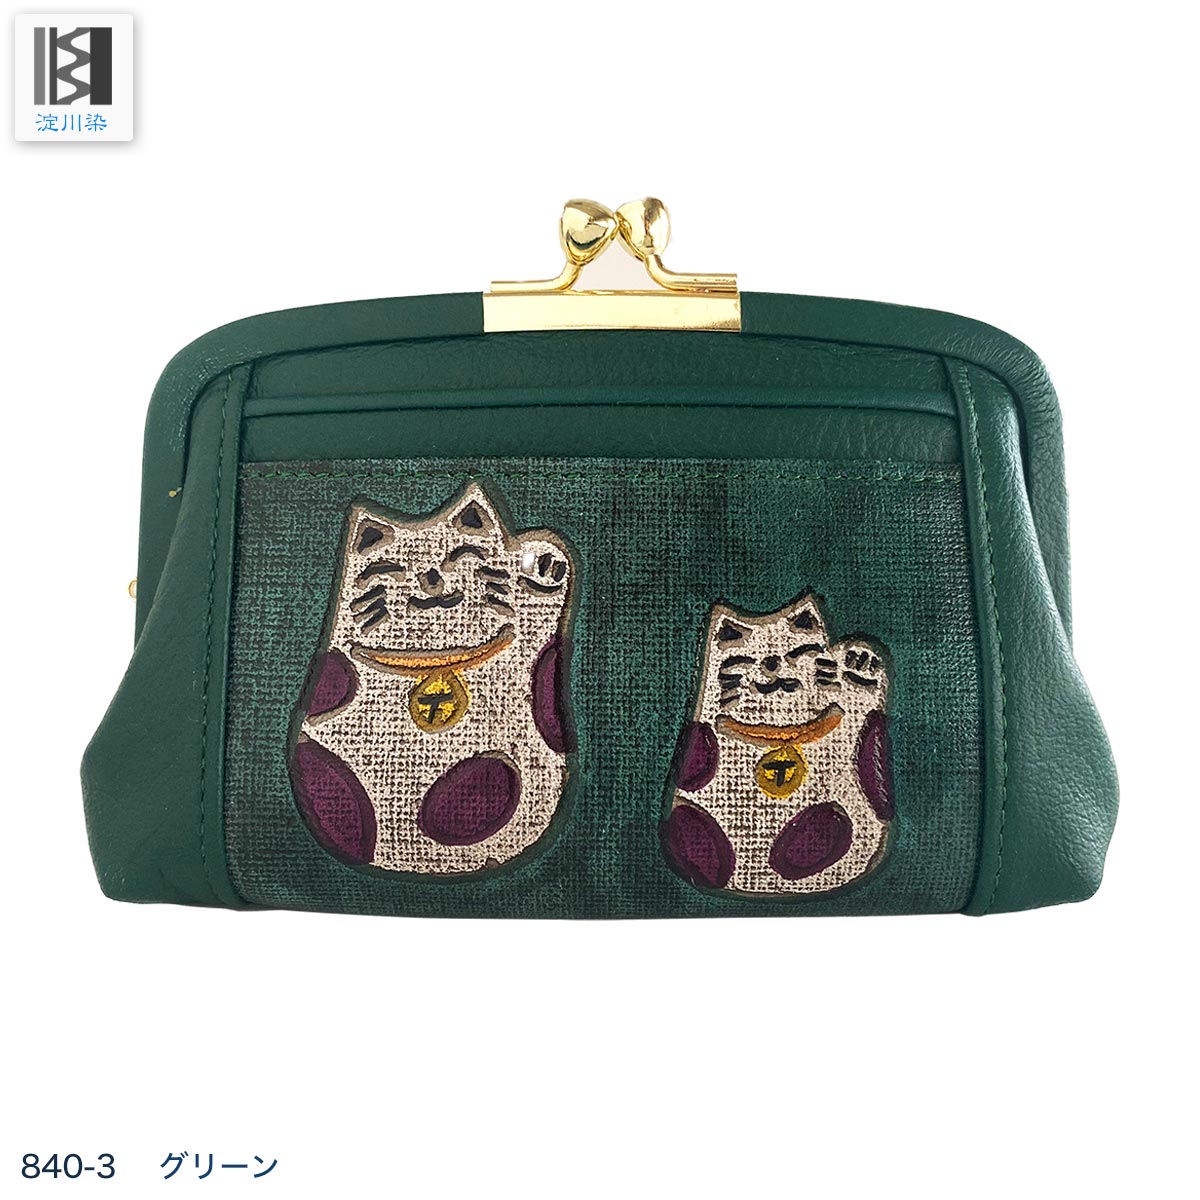 がま口財布 本革 猫アイテム 日本製 招福猫 ねこ レディース 財布 縁起